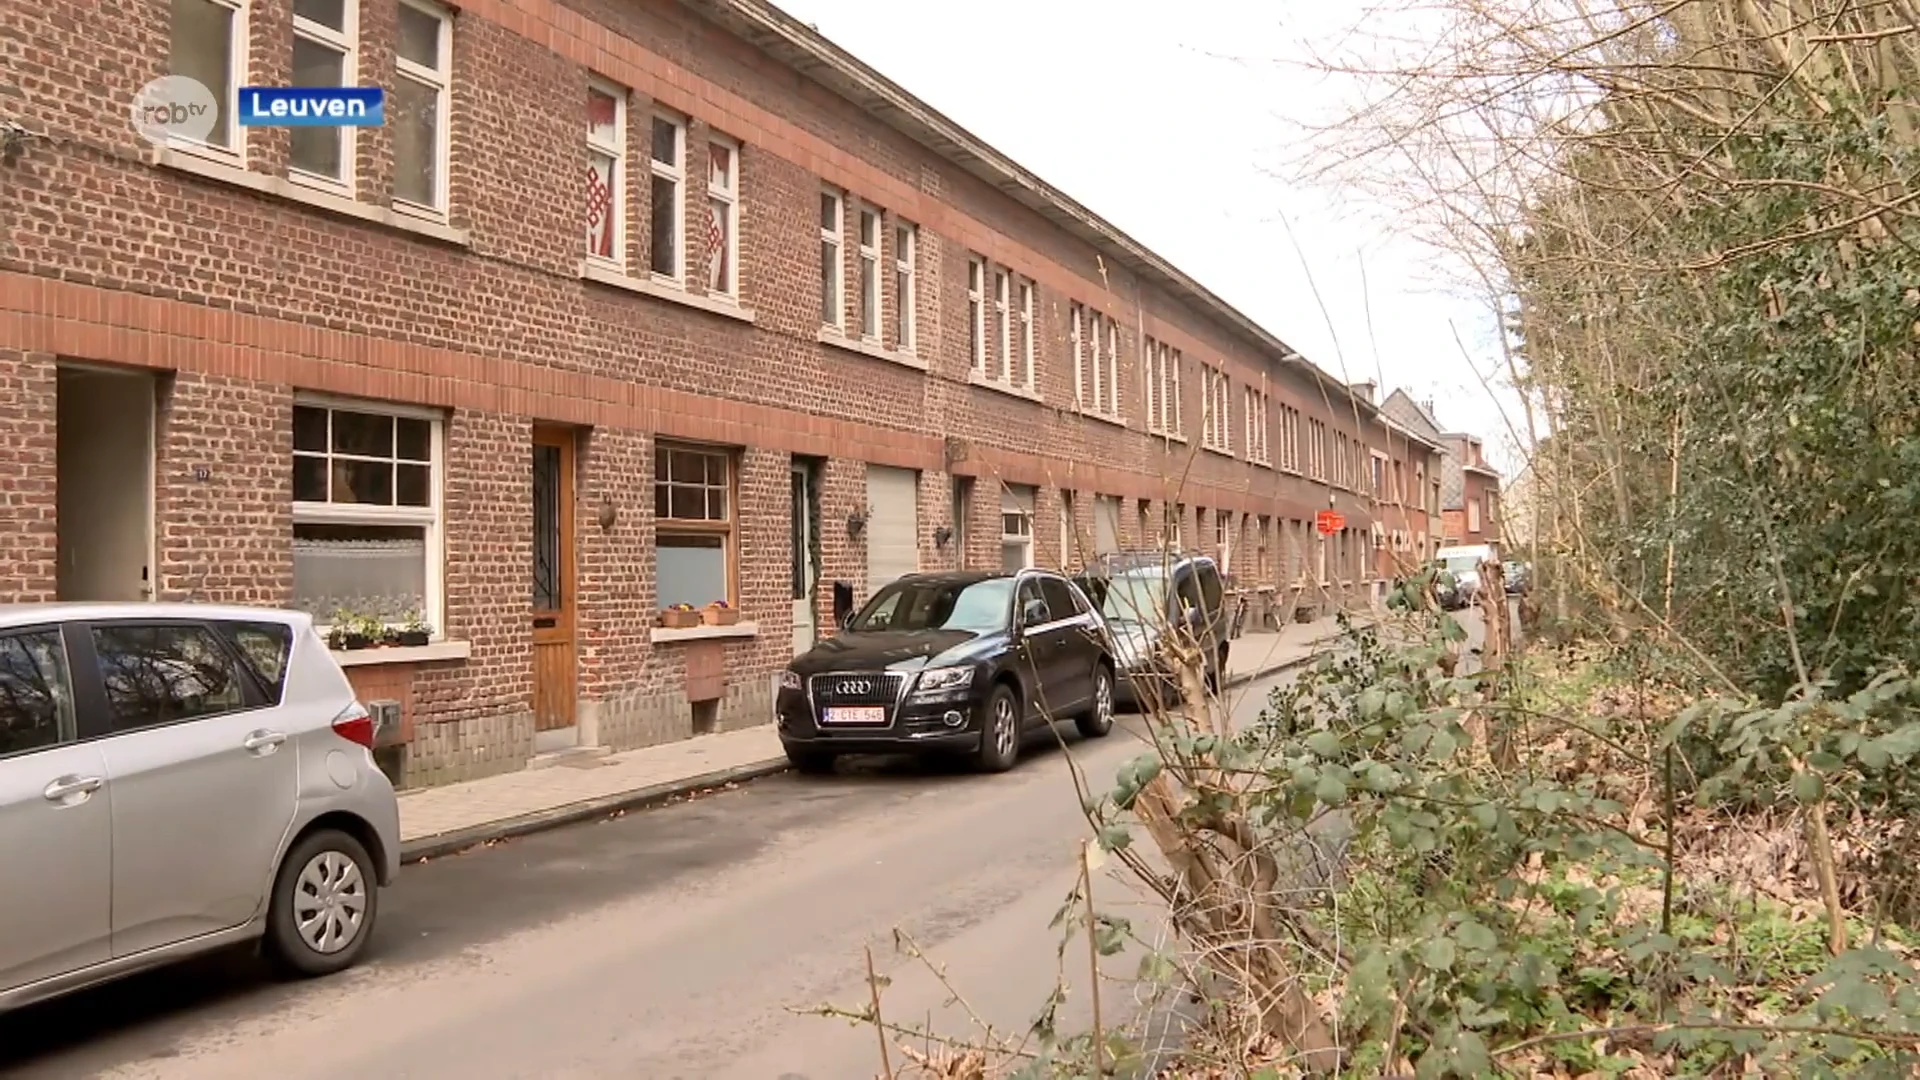 Leuven koopt 18 woningen in Grensstraat in Kessel-Lo om er budgethuurwoningen van te maken